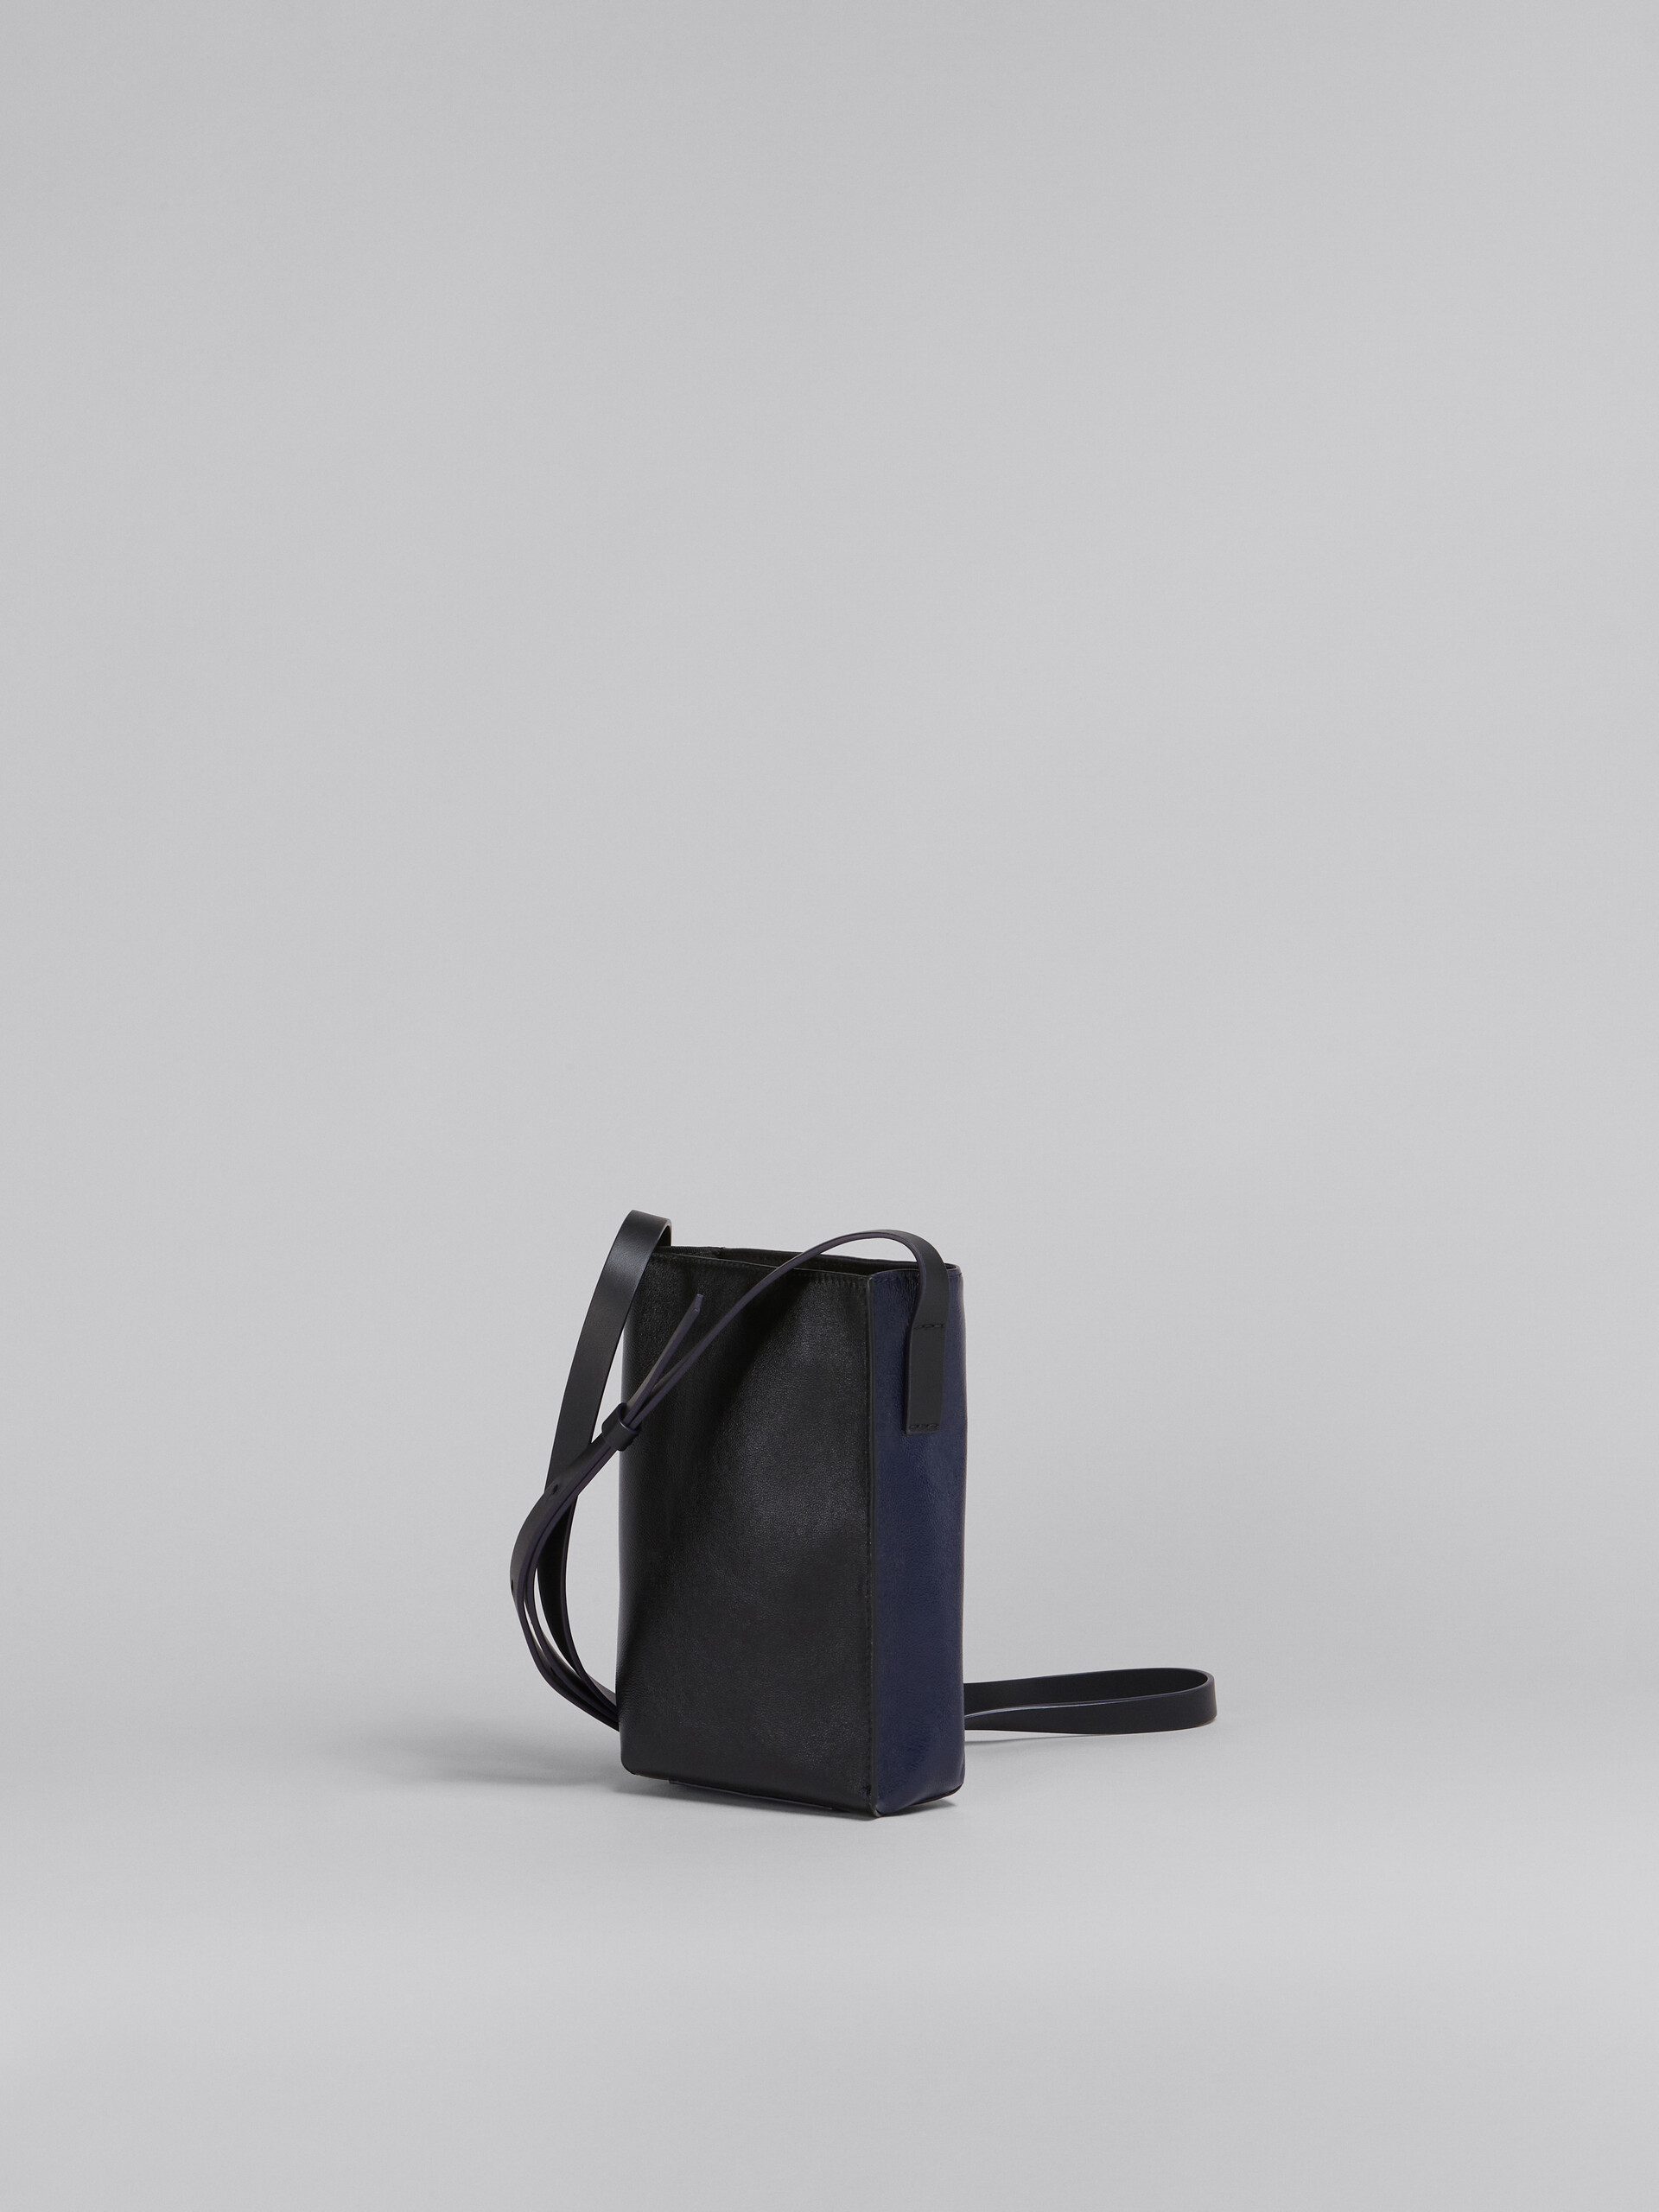 Sac MUSEO SOFT en cuir brillant bleu et noir - Sacs portés épaule - Image 3